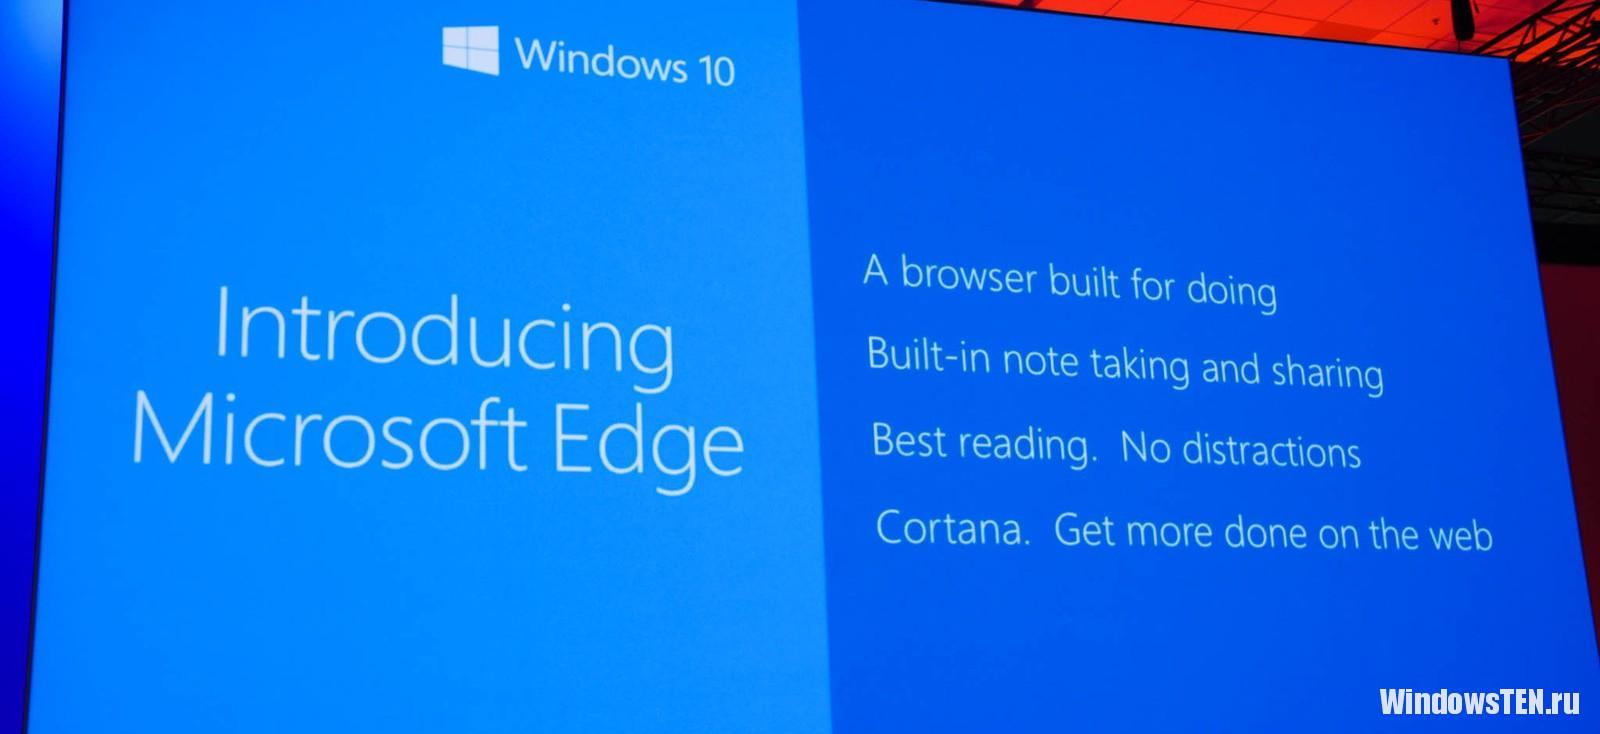 Официальное название браузера Microsoft Edge